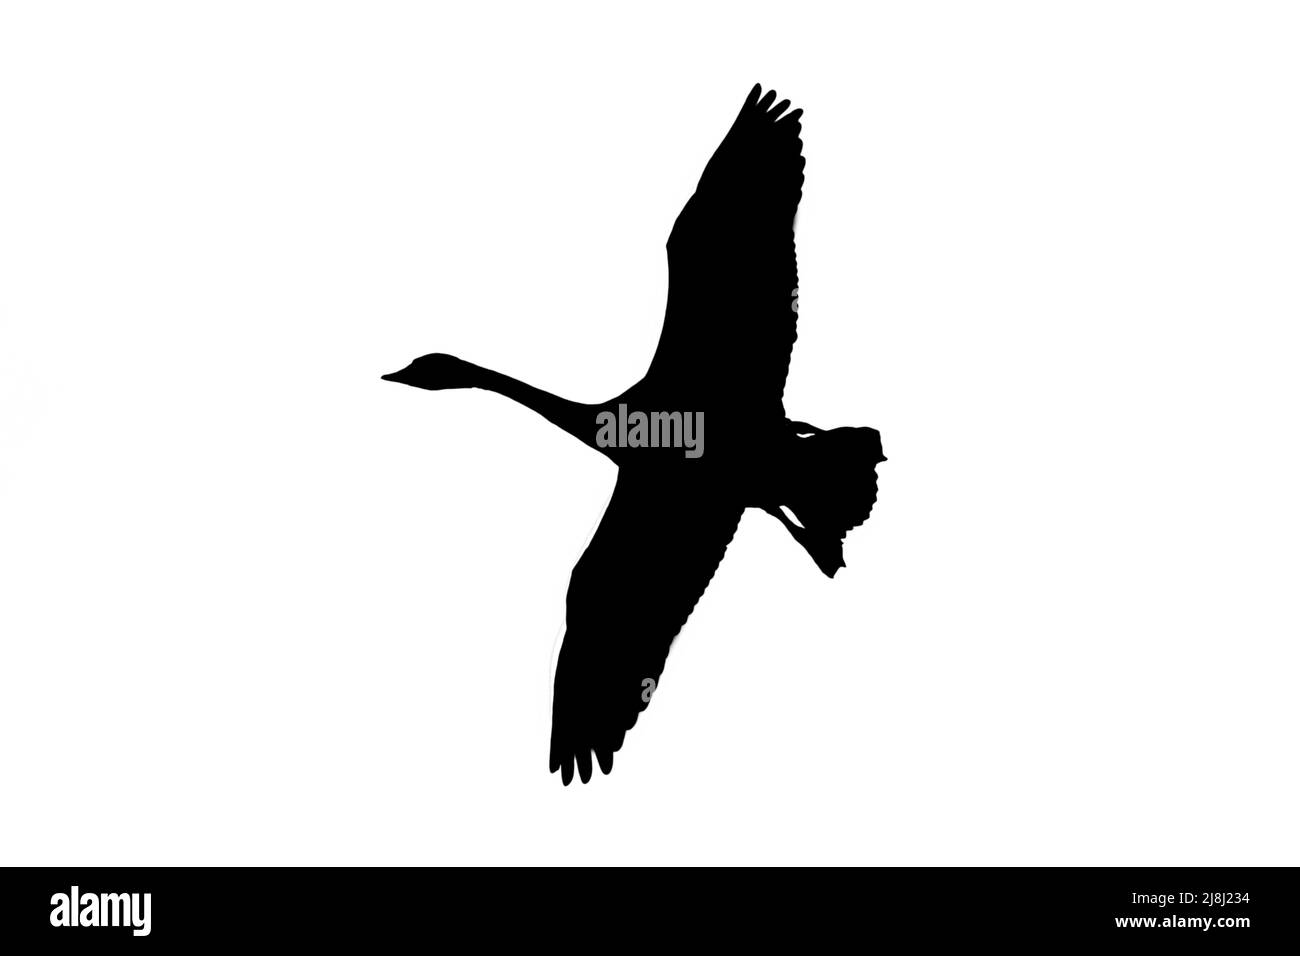 Silueta del cisne tundra / cisne de Bewick (Cygnus bewickii) en vuelo contorneado sobre fondo blanco para mostrar alas, cabeza y cola formas Foto de stock